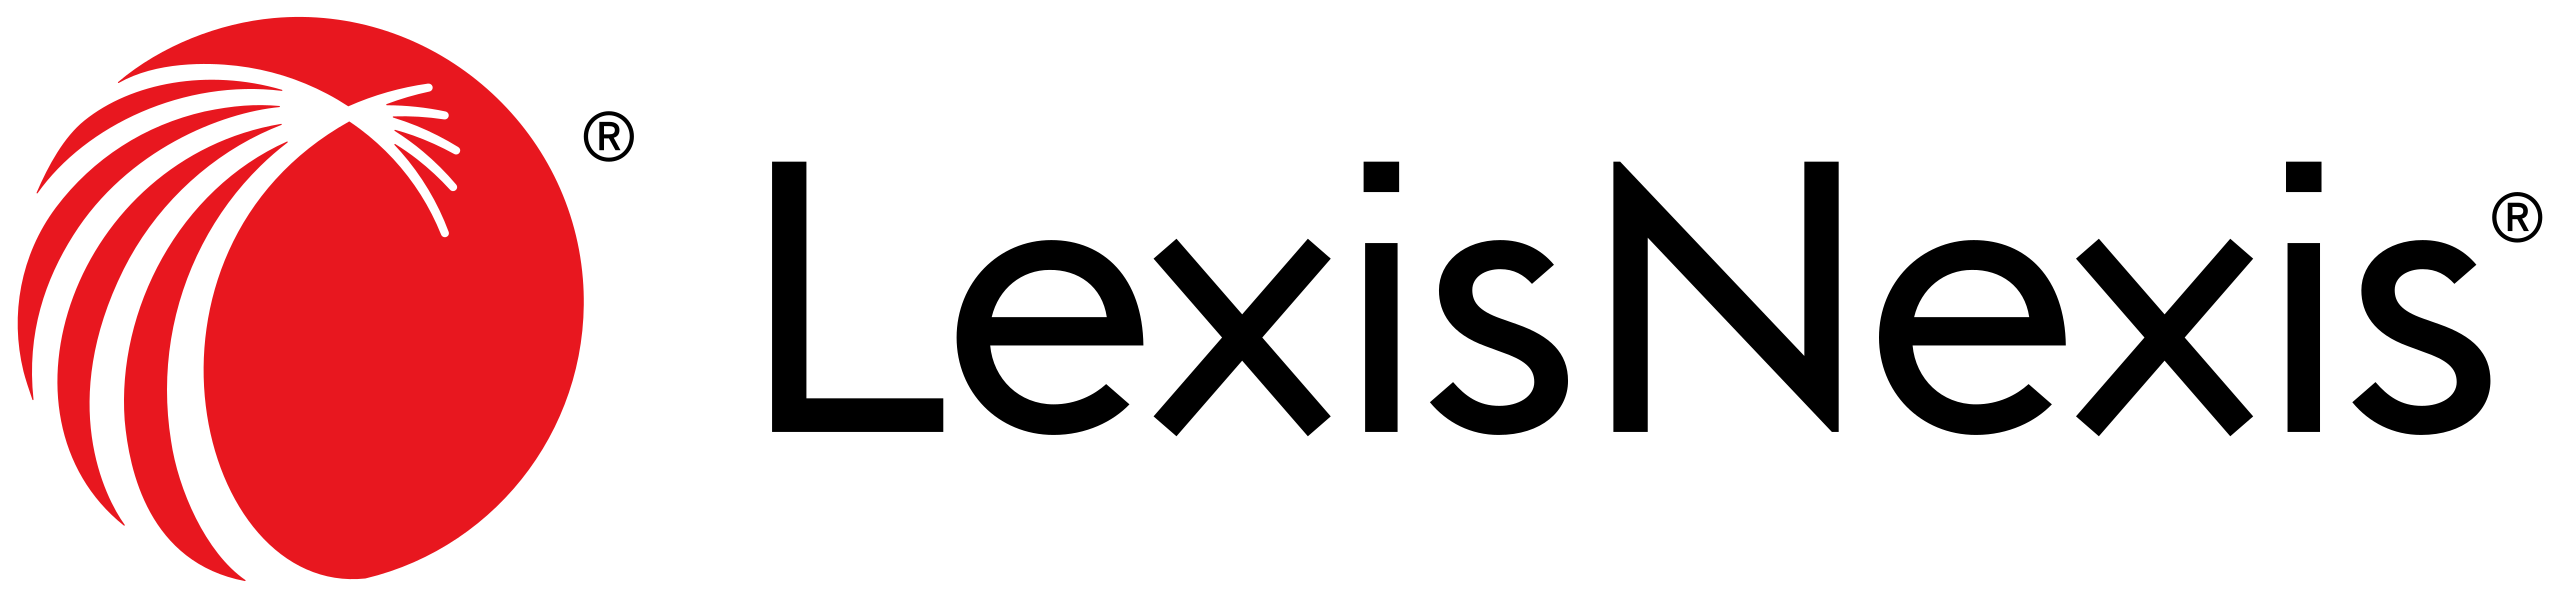 LexisNexis_logo